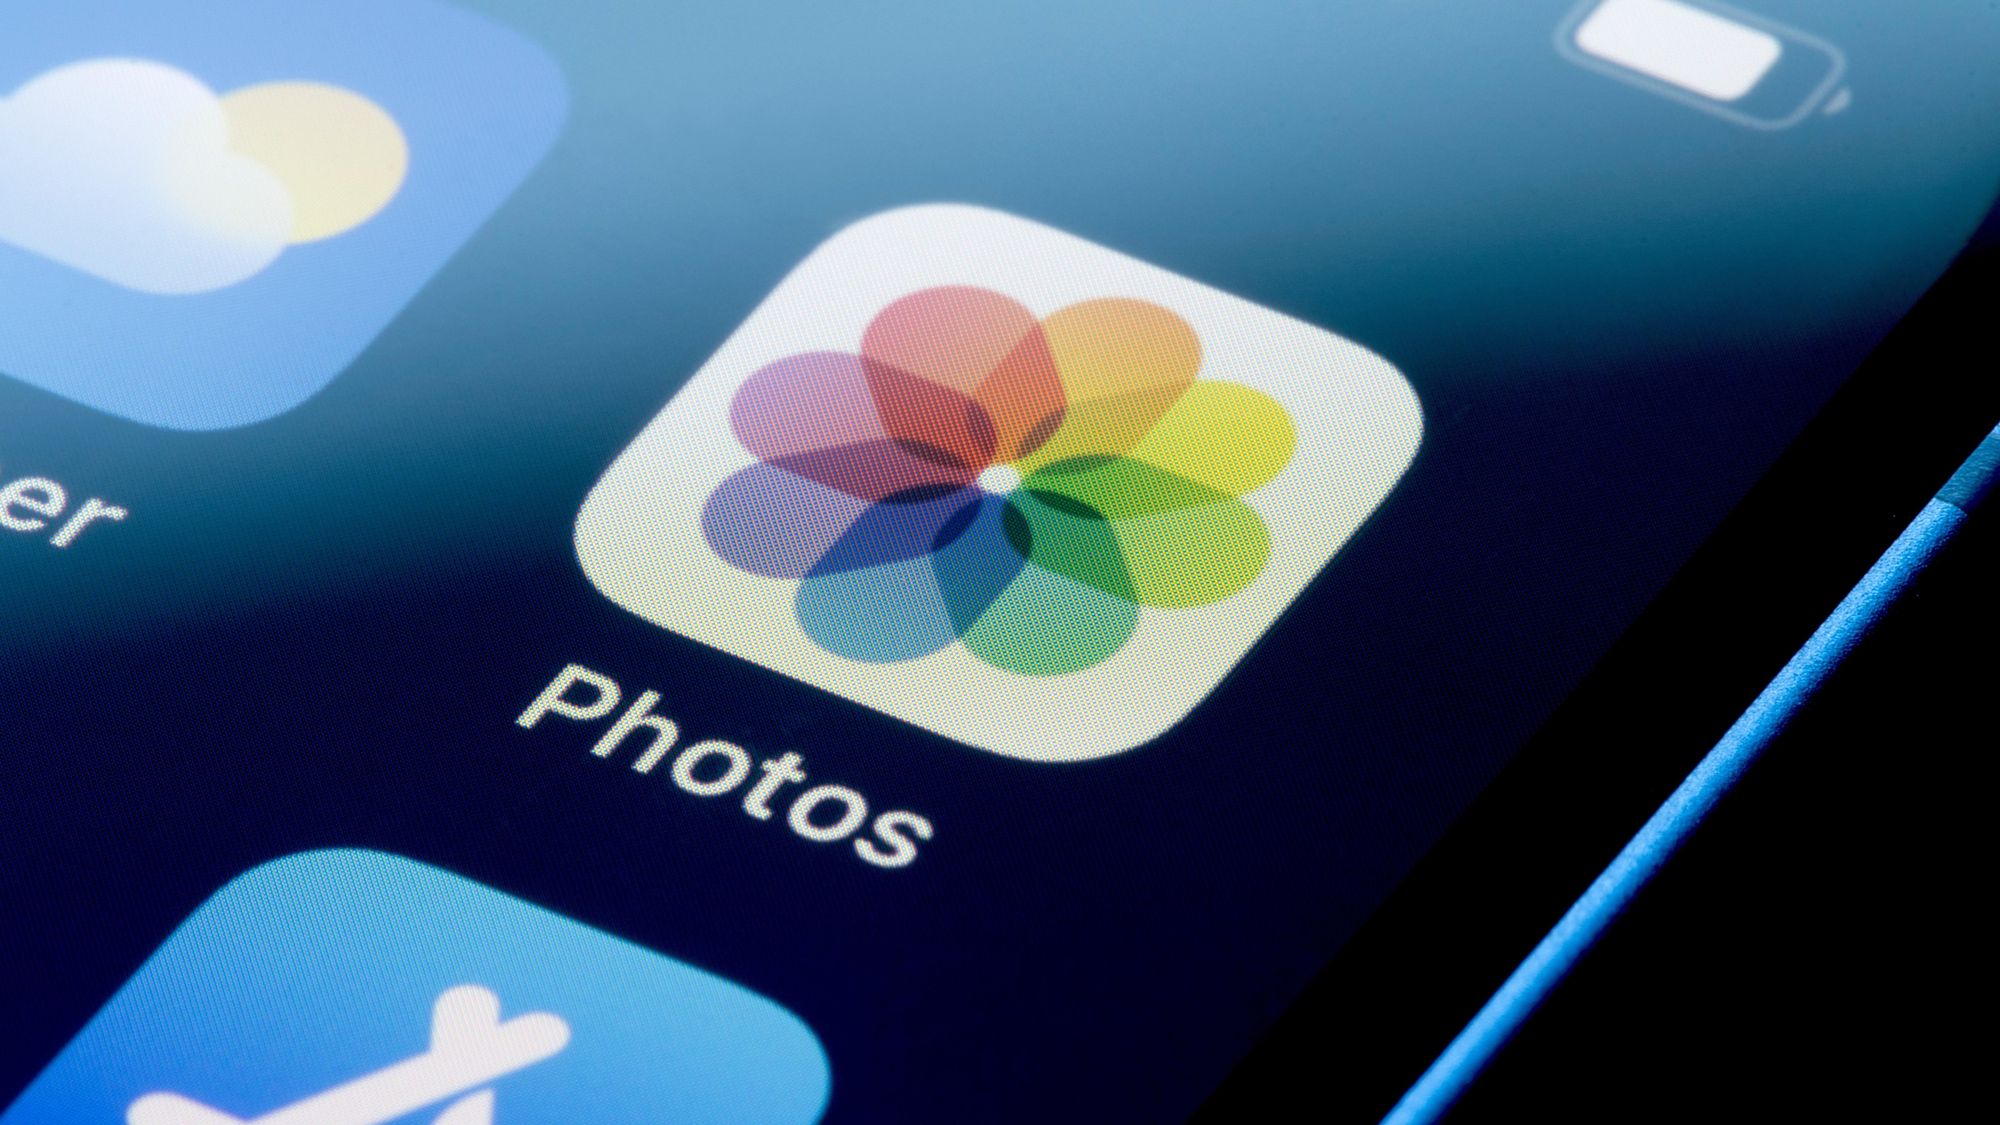 Перестаньте использовать выделение в iOS для скрытия личной информации на фотографиях